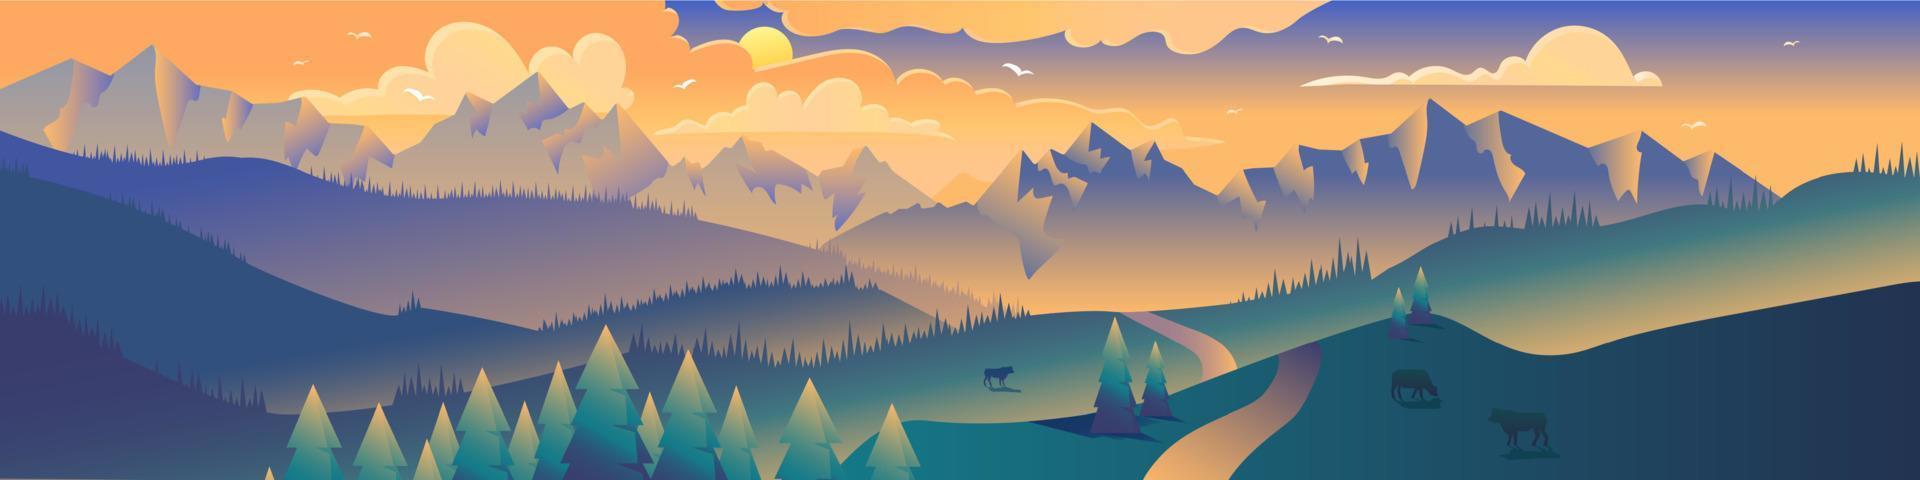 montaña vista panorámica ilustración minimalista vector